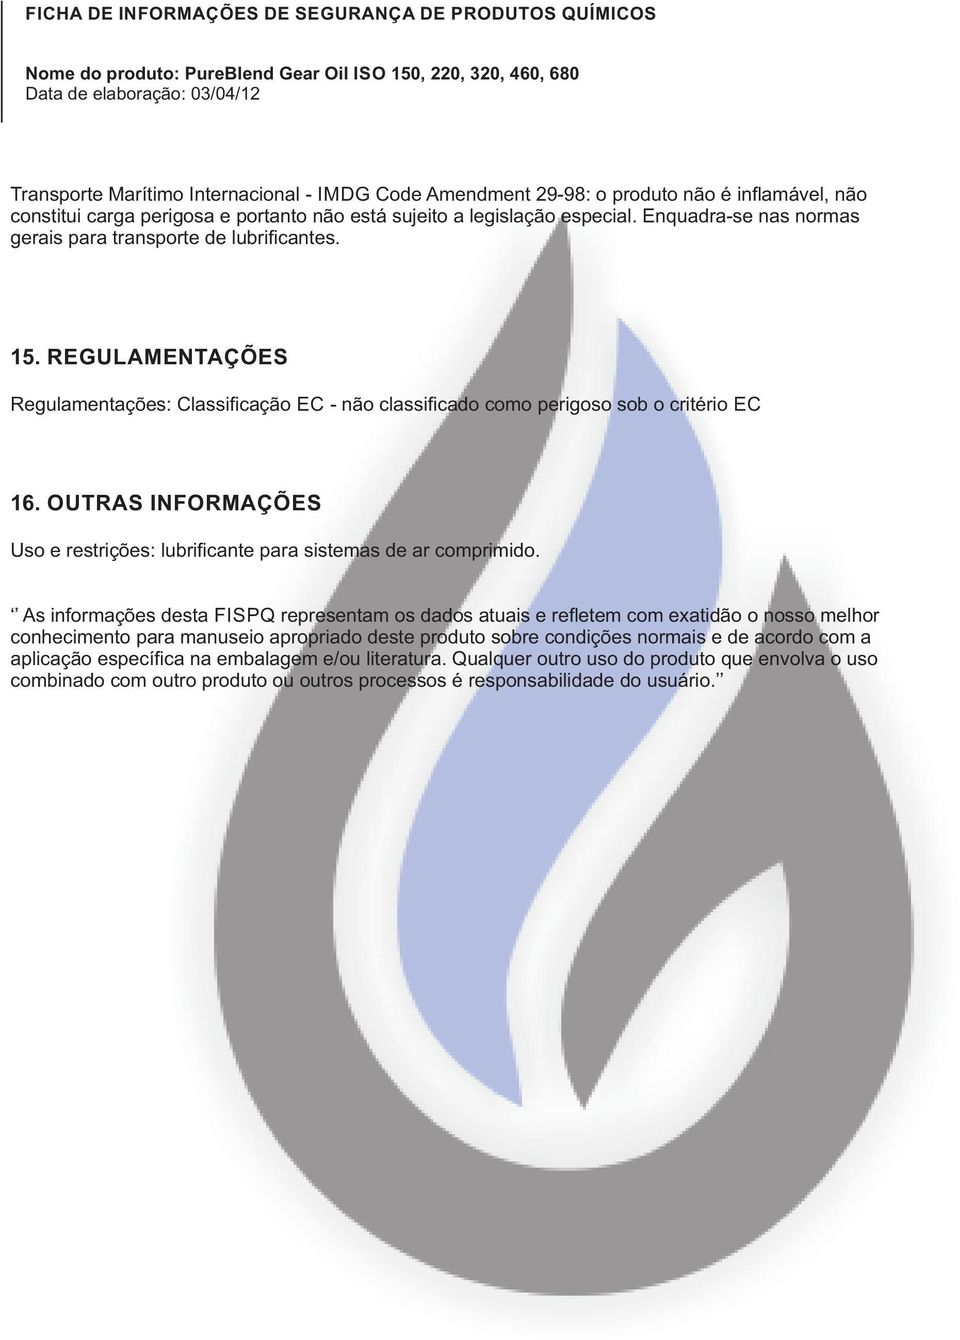 OUTRAS INFORMAÇÕES Uso e restrições: lubrificante para sistemas de ar comprimido.